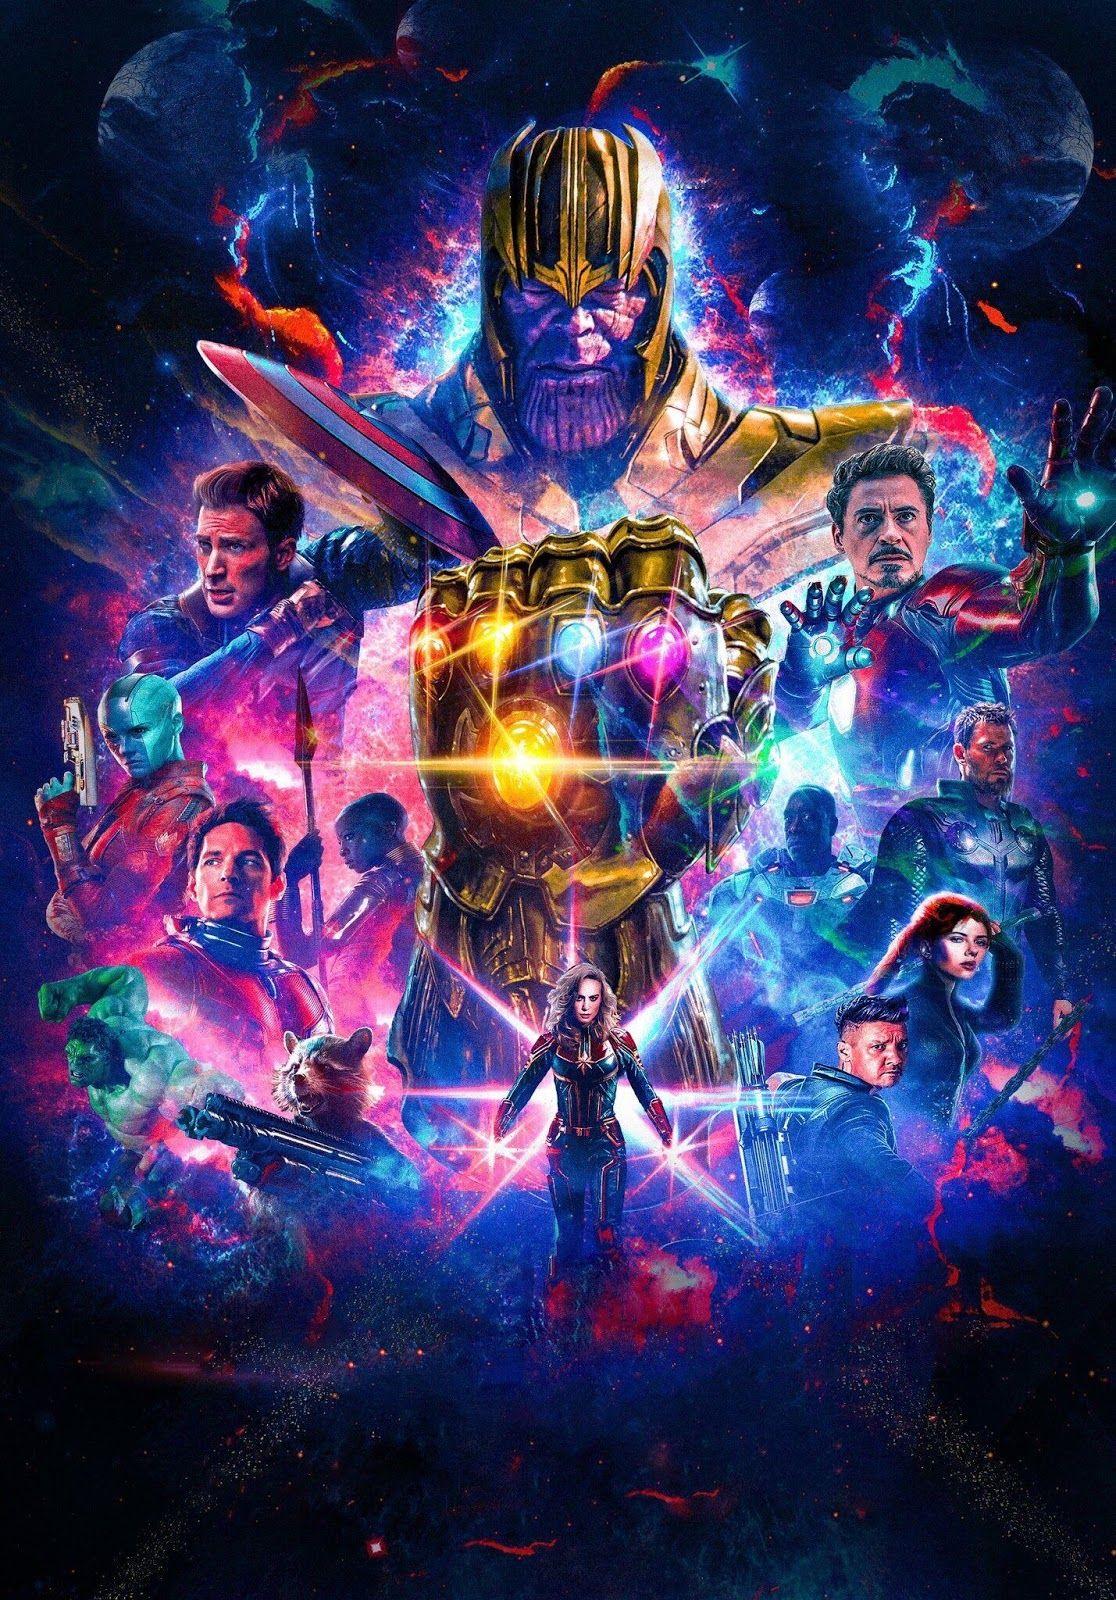 Avengers Endgame Poster 4k. Avengers Endgame Full